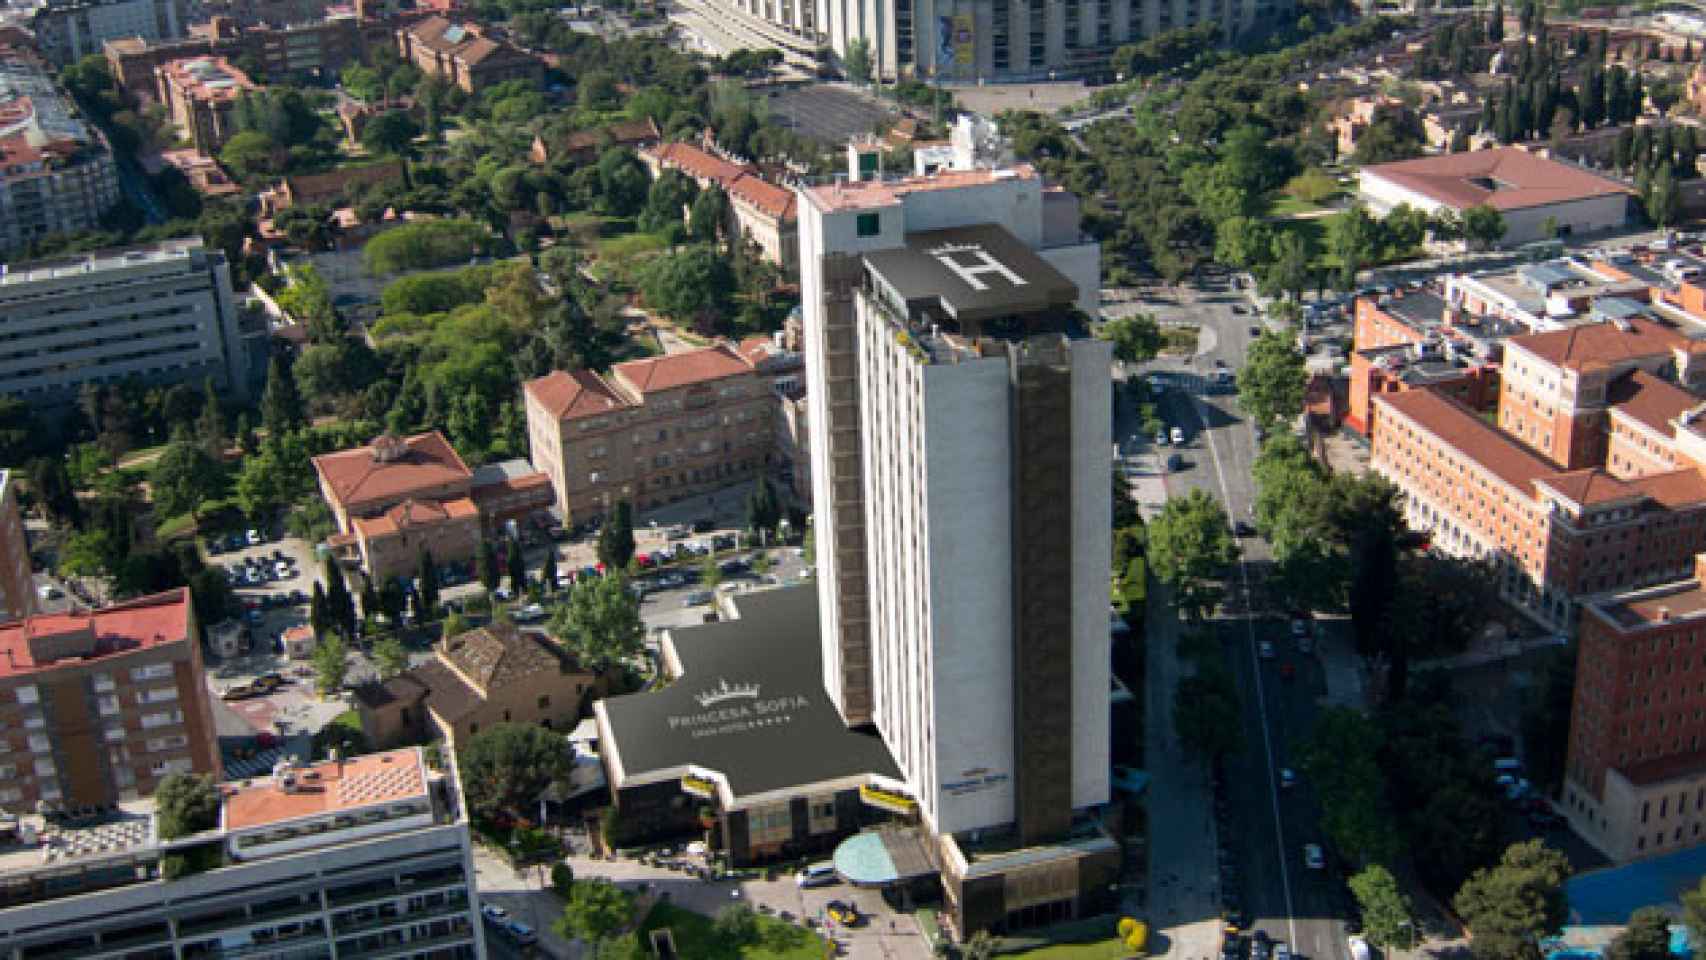 Vista aérea del hotel Princesa Sofía de Barcelona / CG